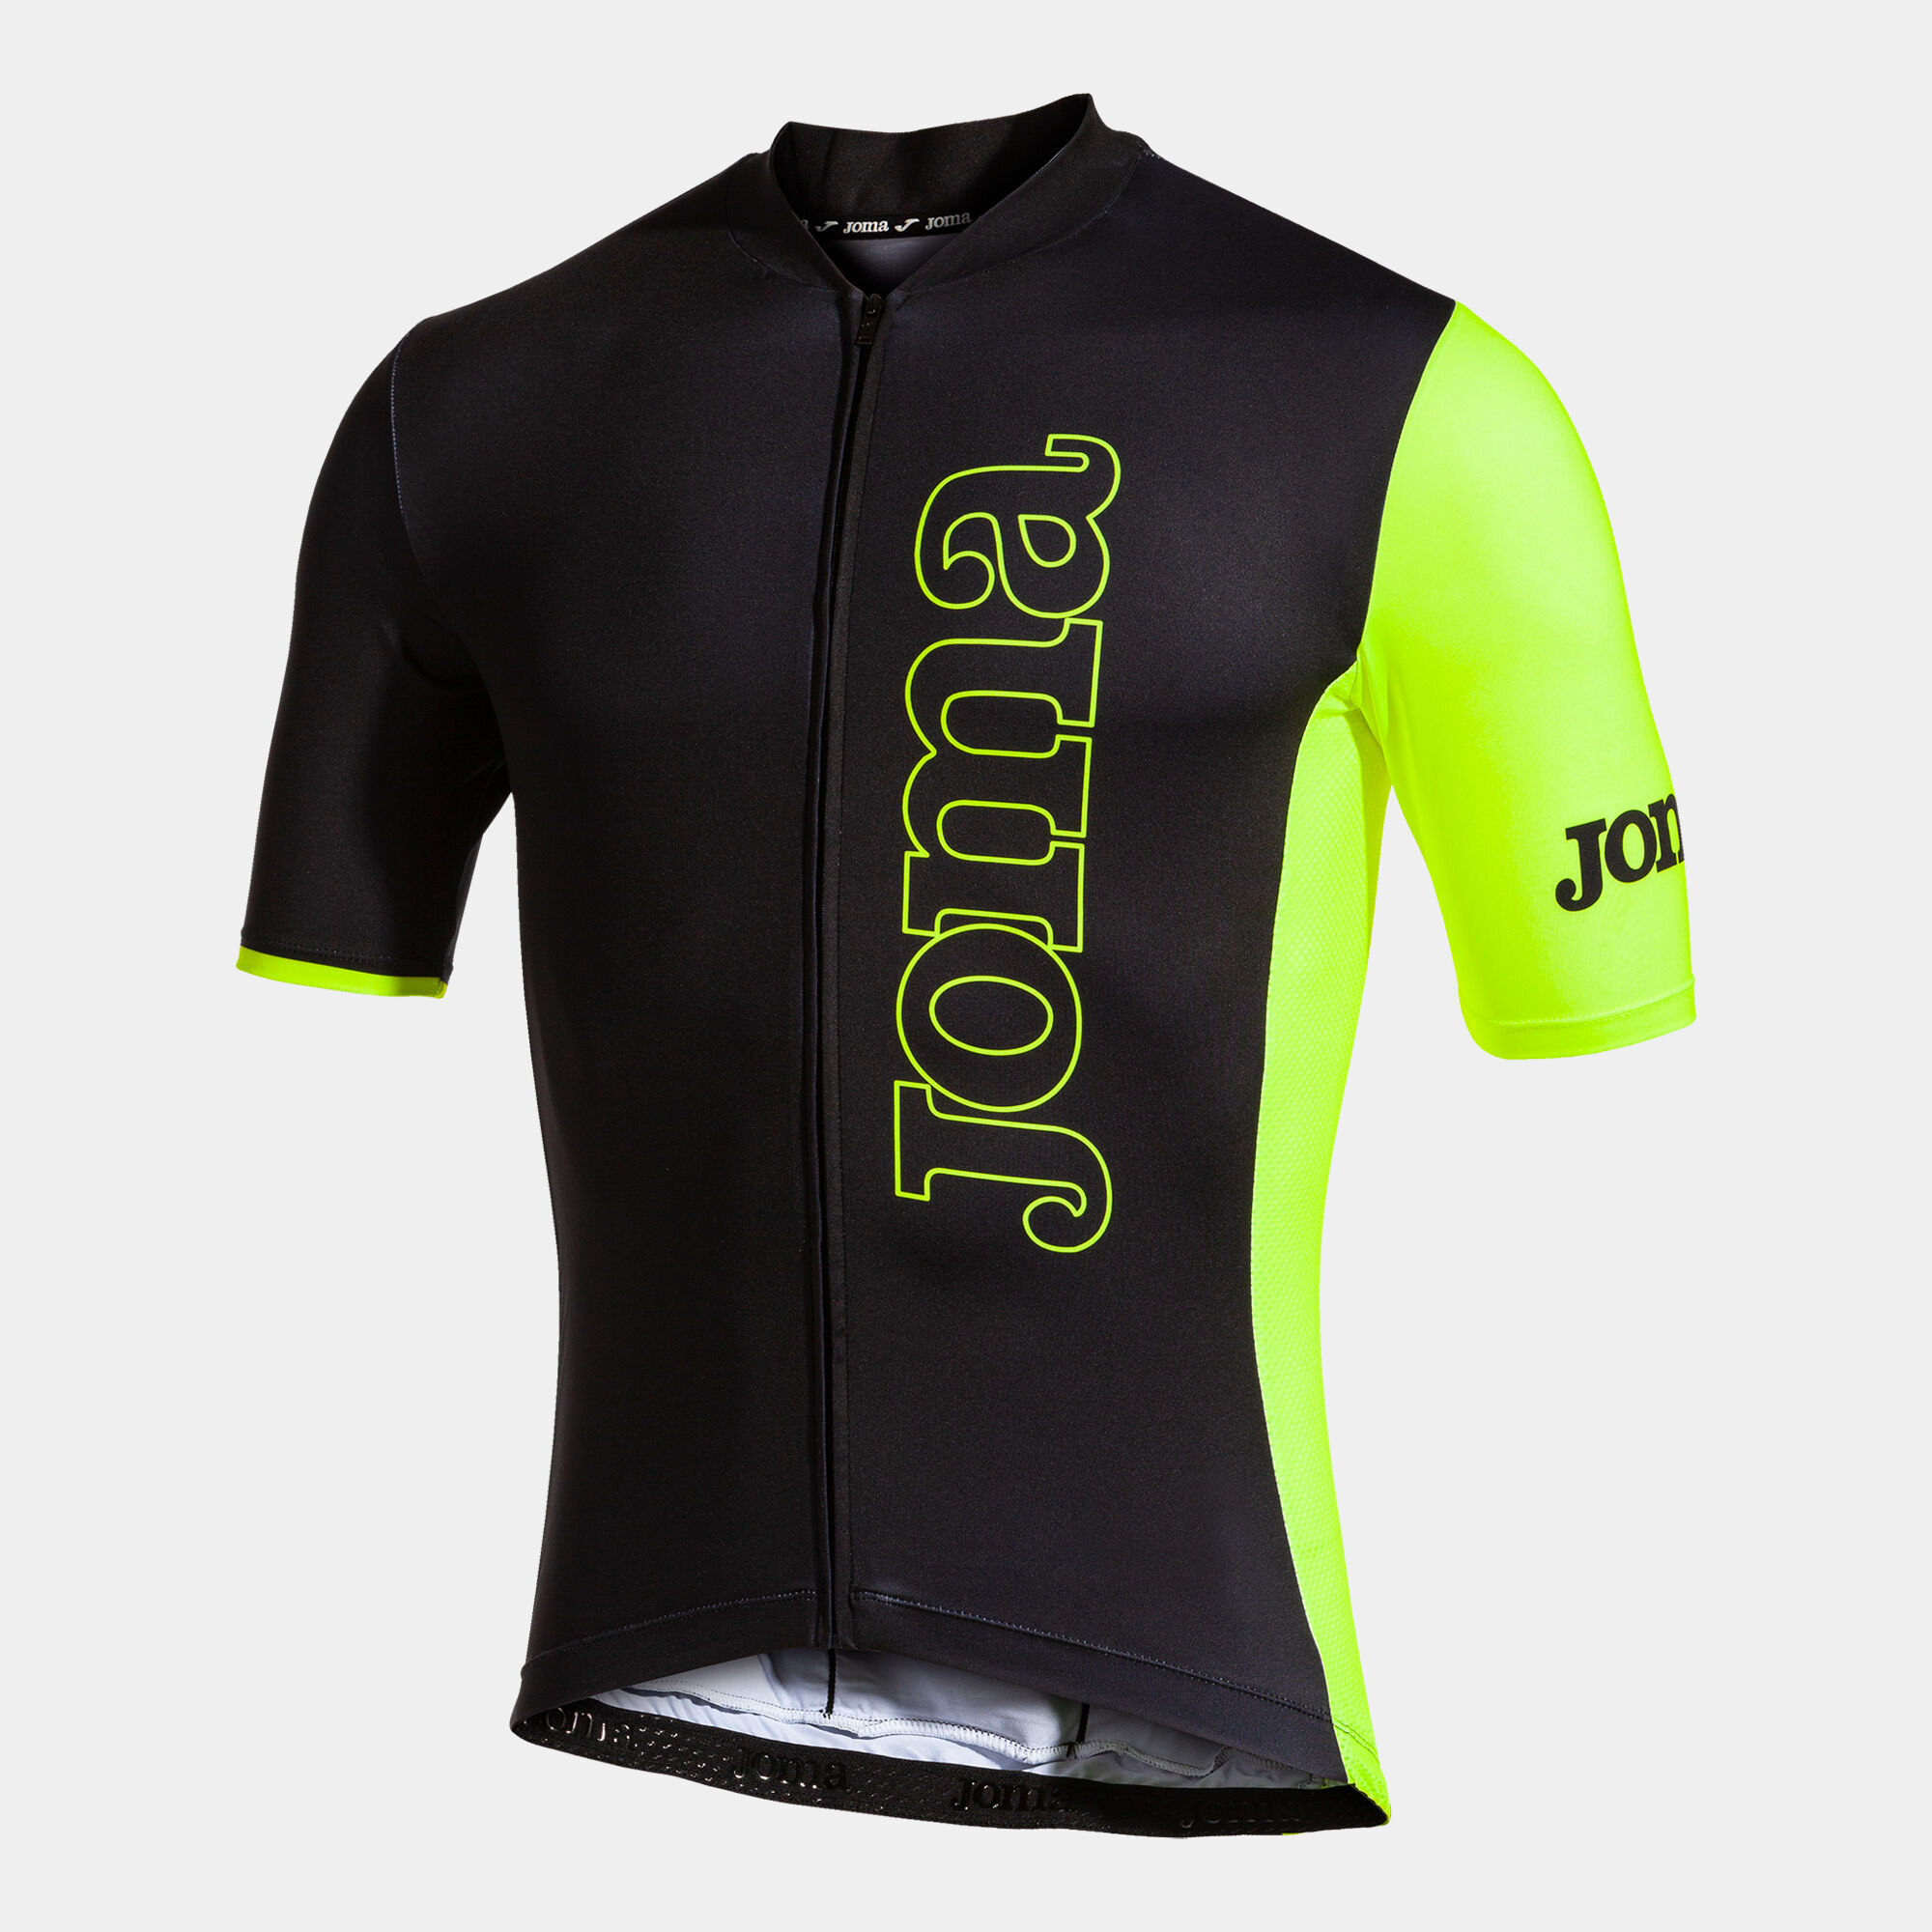 Maglia da ciclismo unisex Crono nero giallo fluorescente